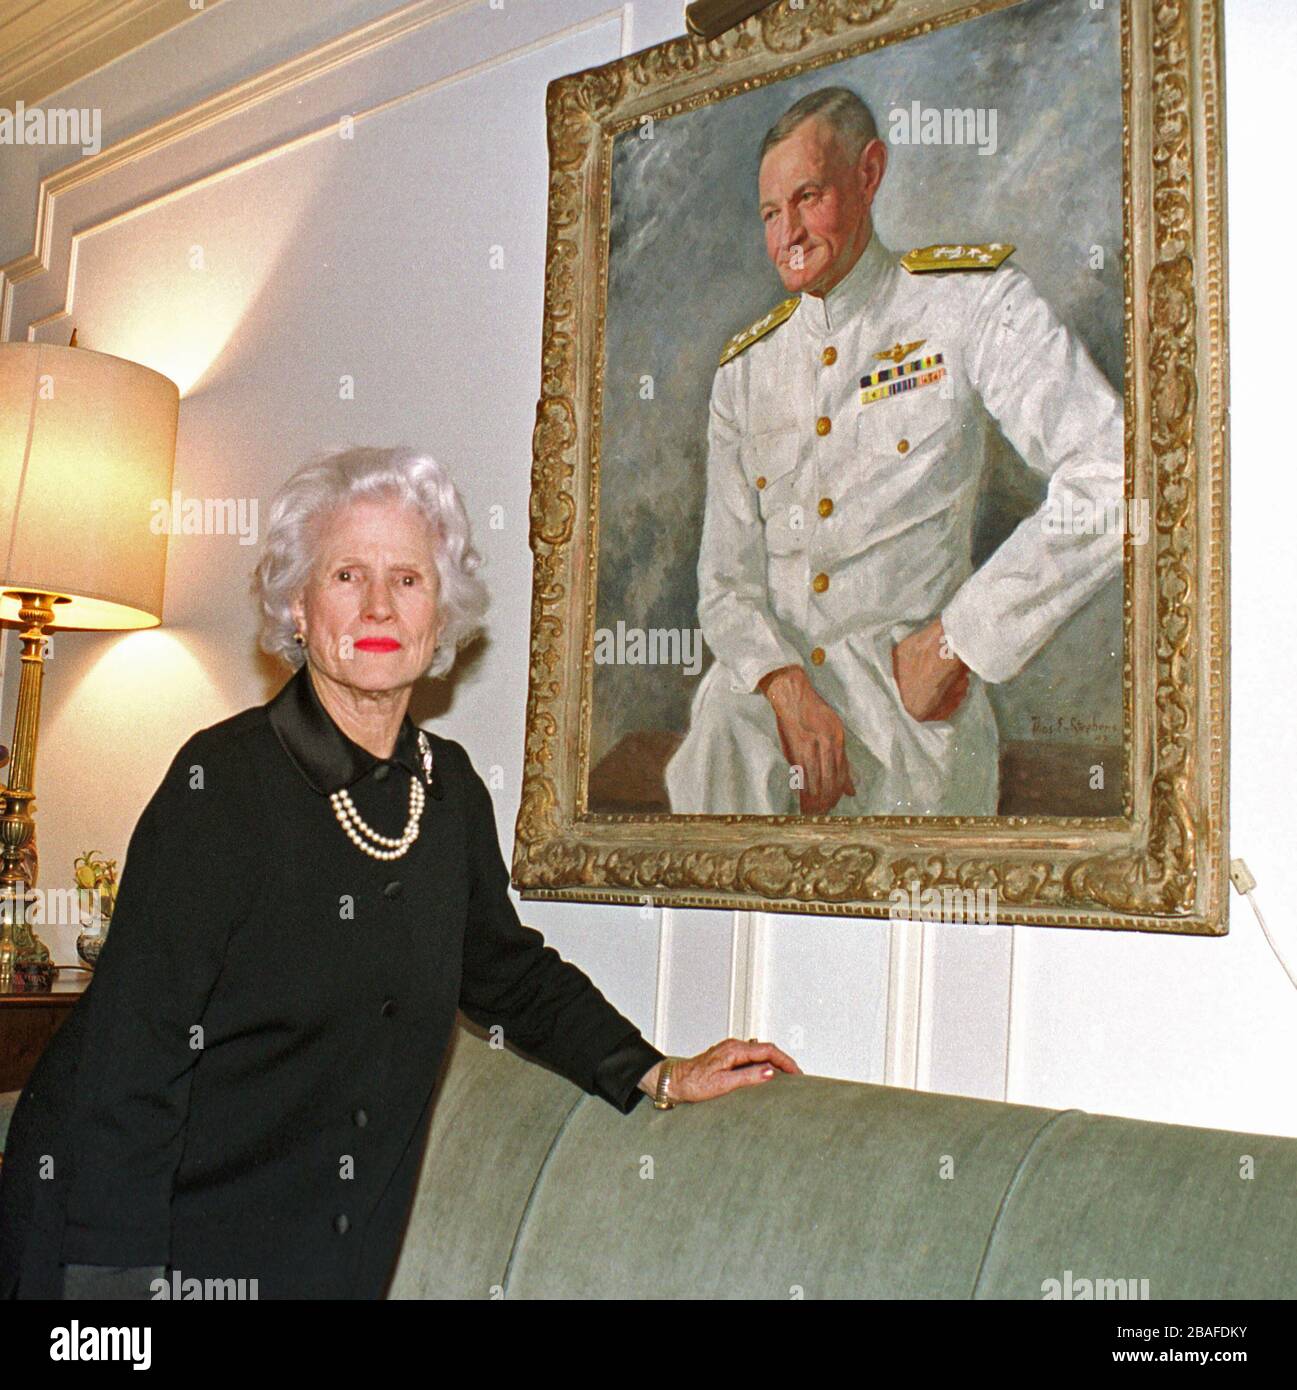 Mme John S. McCain, Jr. (Roberta), pose devant un portrait de son défunt mari, le défunt amiral John S. McCain, Jr. De la Marine américaine, Commandant en chef du Commandement du Pacifique (CINCPAC), dans son appartement à Washington, DC, le 18 février 2000. Son fils est le sénateur américain John S. McCain, III (républicain de l'Arizona). Crédit: Ron Sachs/CNP | usage dans le monde entier Banque D'Images